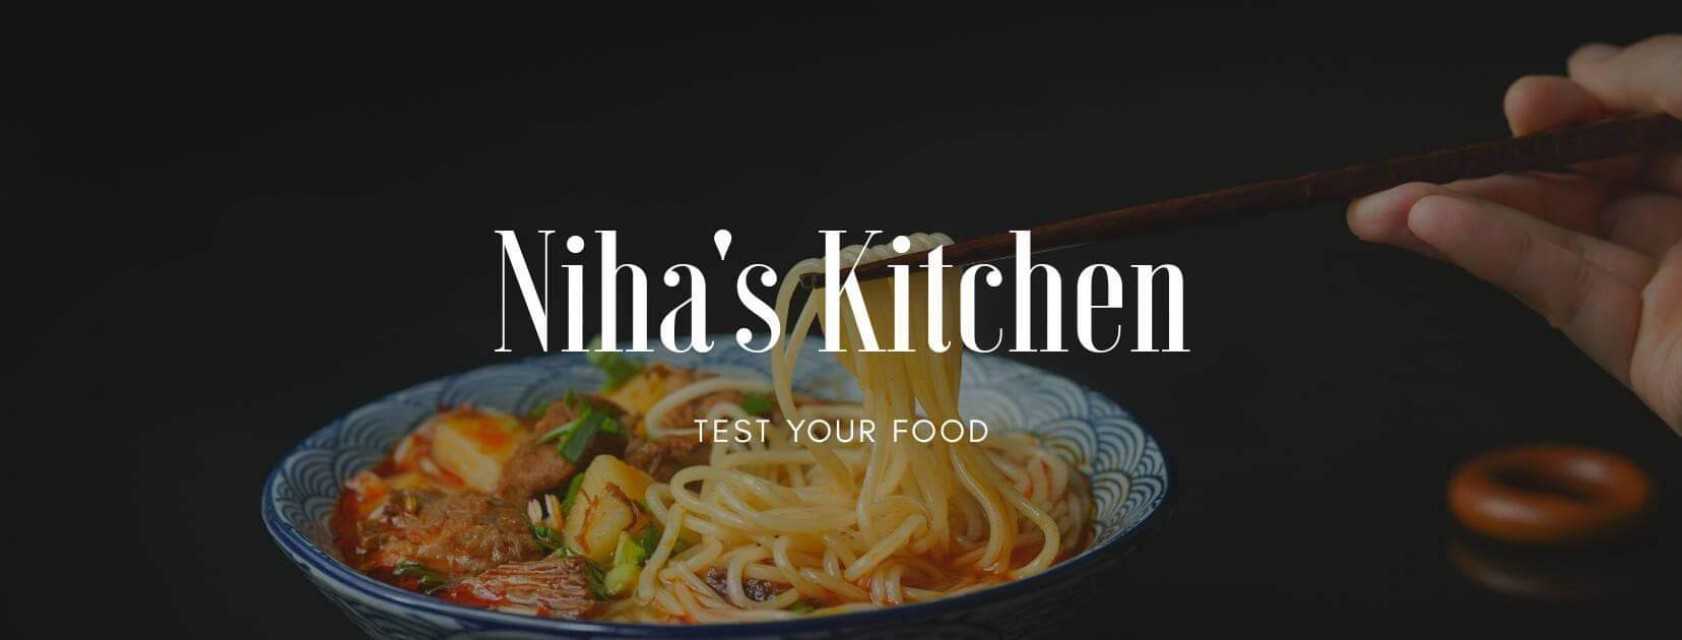 Niha's Kitchen